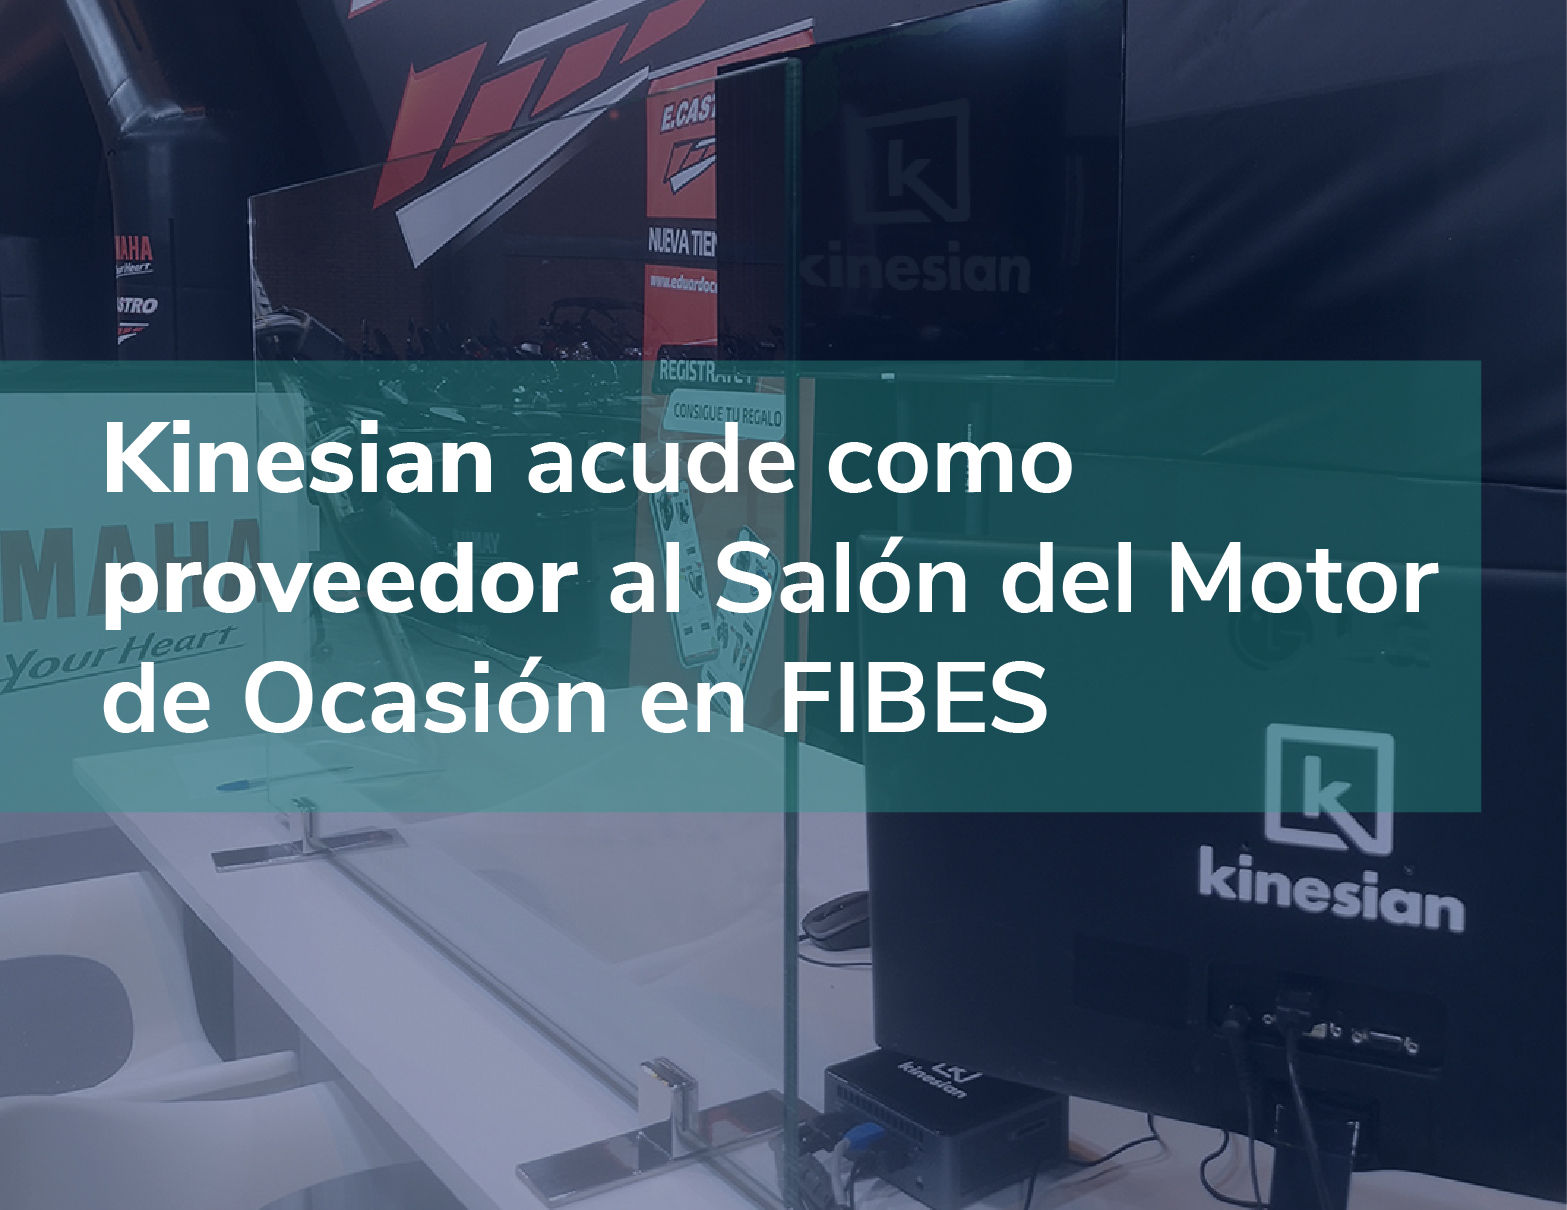 Kinesian acude como proveedor al Salón del Motor de Ocasión en FIBES